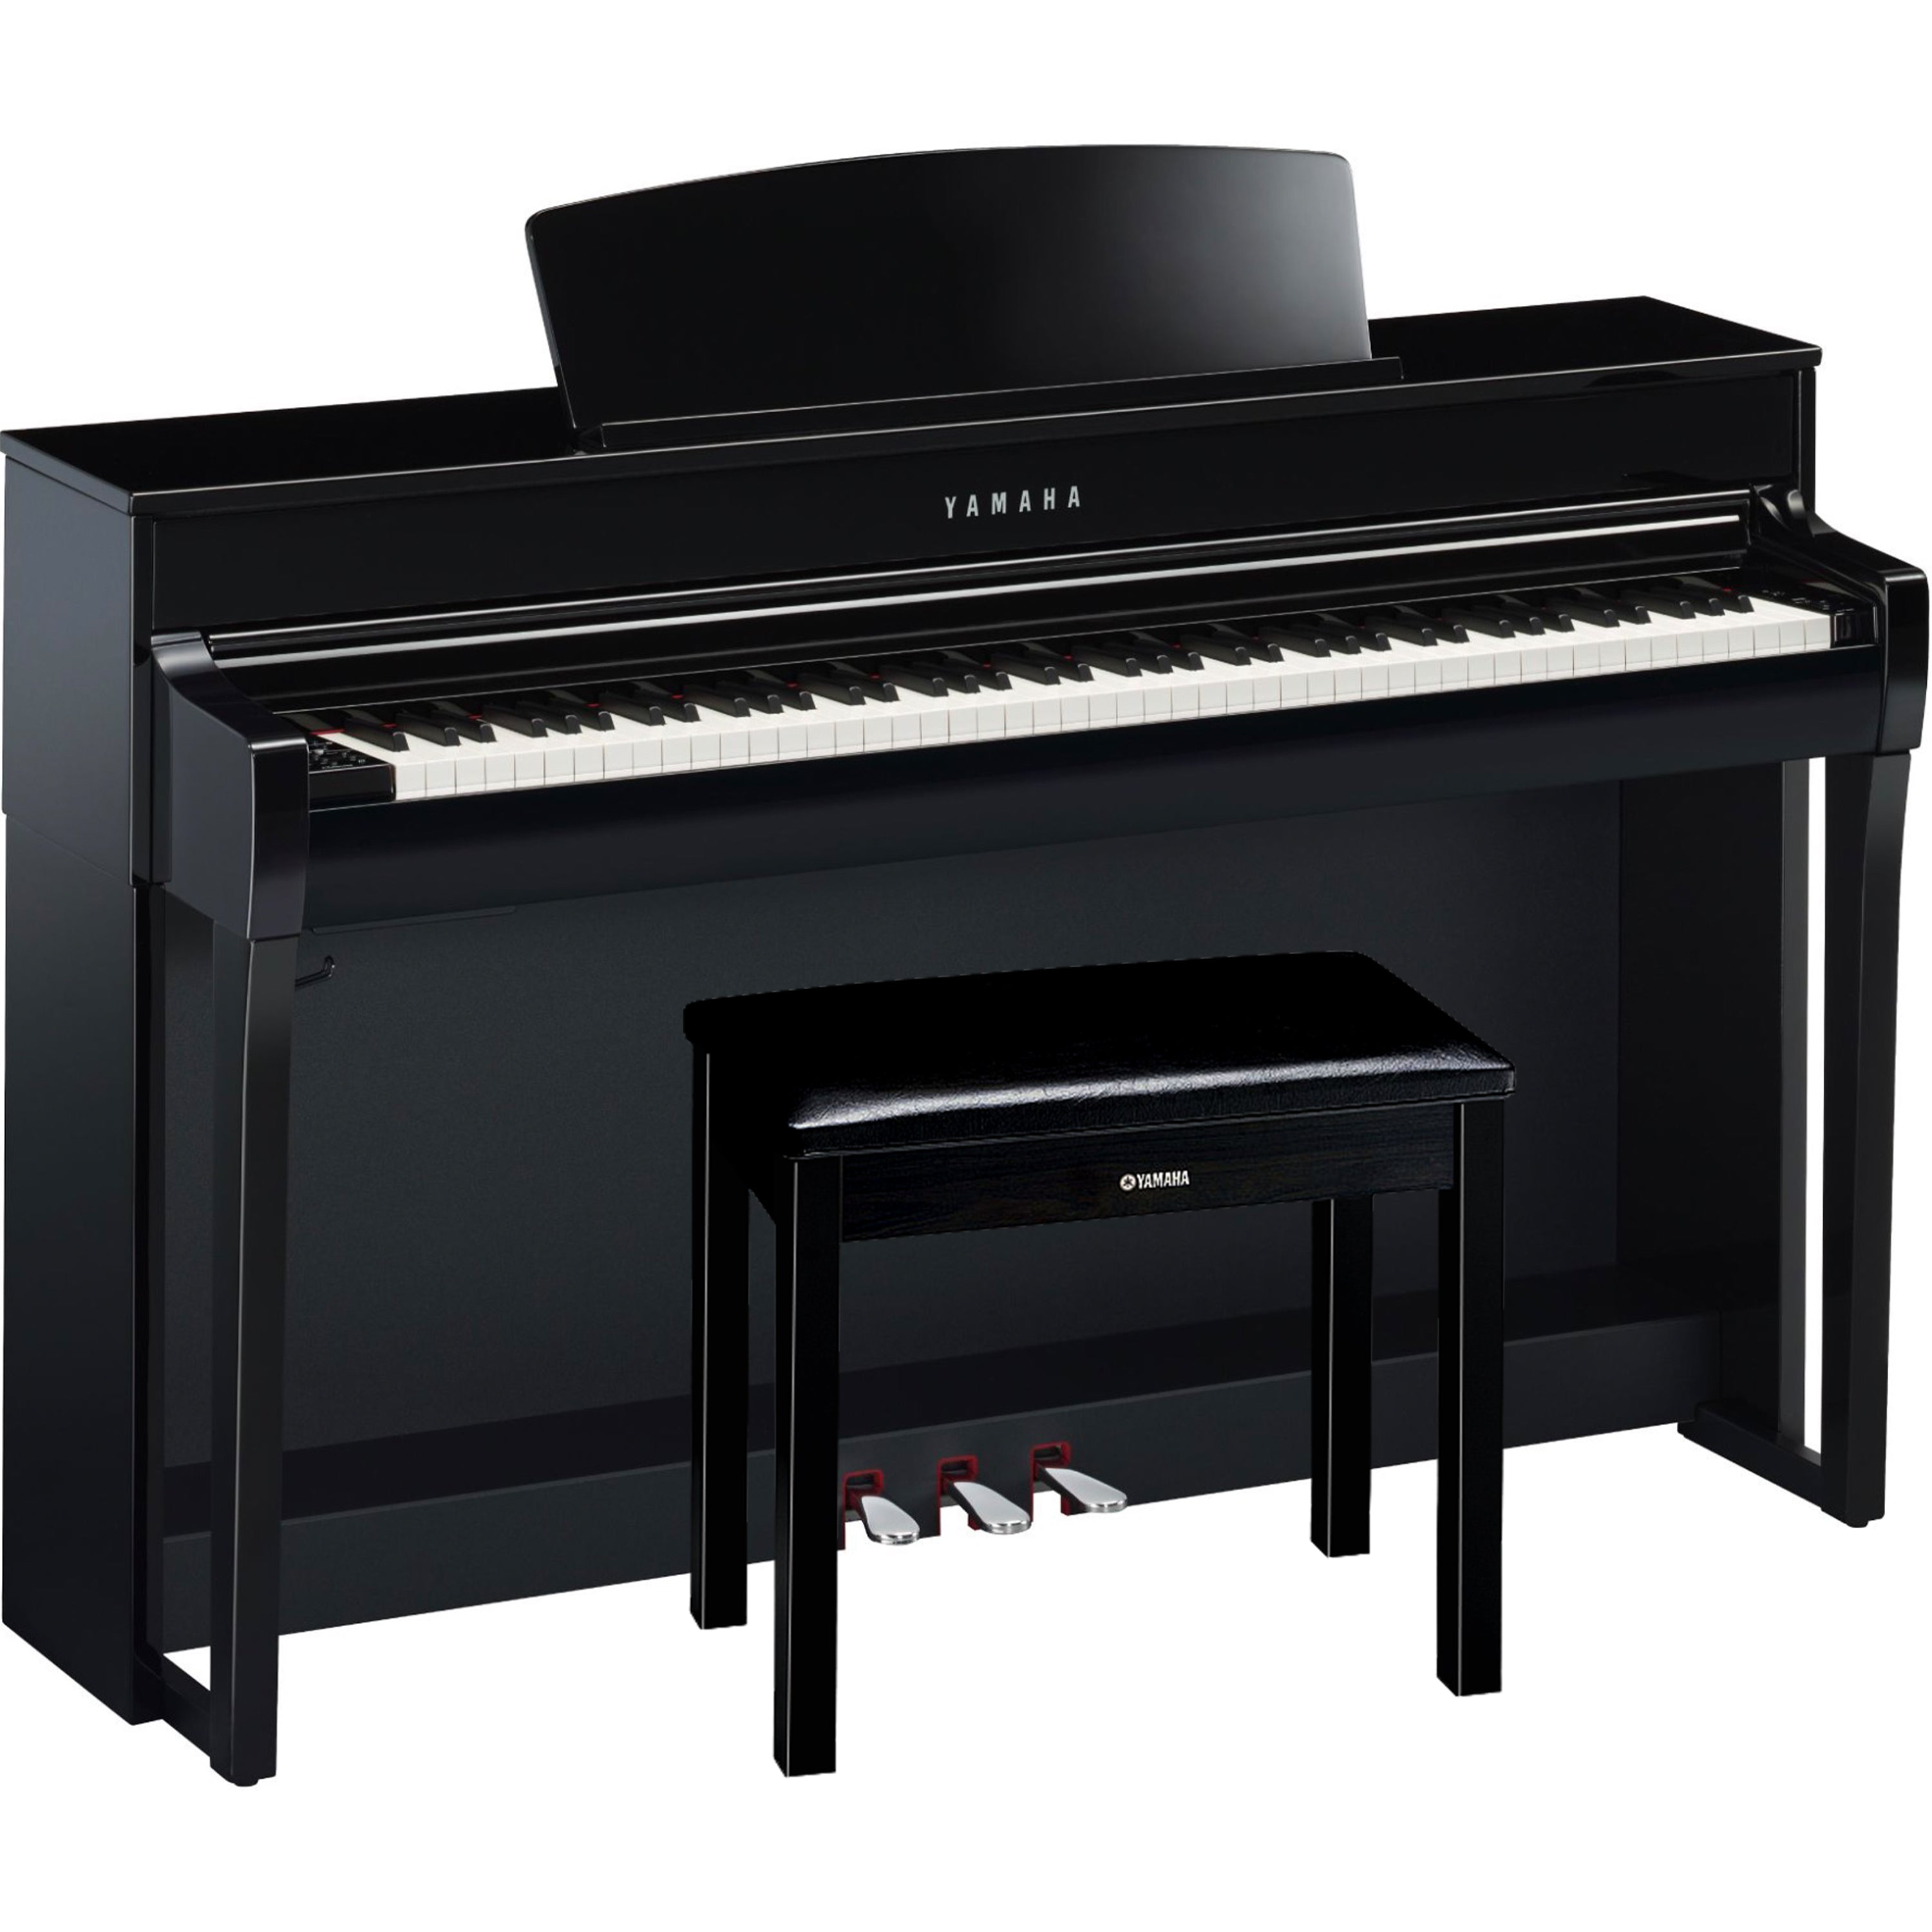 Yamaha Clavinova CLP-745 Digital Piano - Polished Ebony - with bench